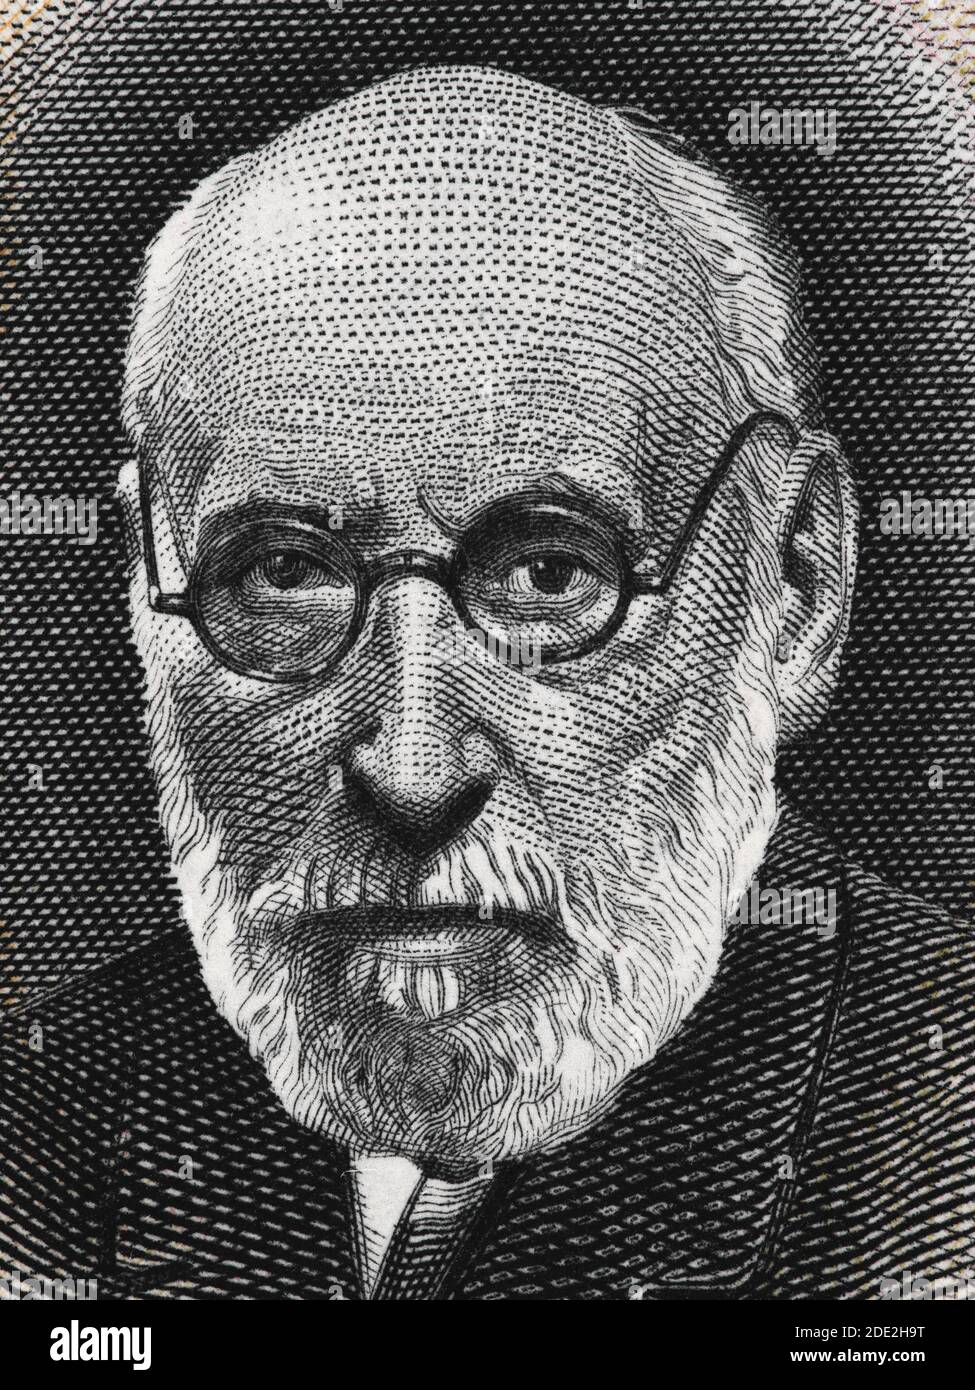 Santiago Ramon y Cajal portrait sur l'Espagne 50 pesetas banknote (1935) closeup, pathologiste espagnol, pionnier de la neuroscience moderne, lauréat du prix Nobel. Banque D'Images